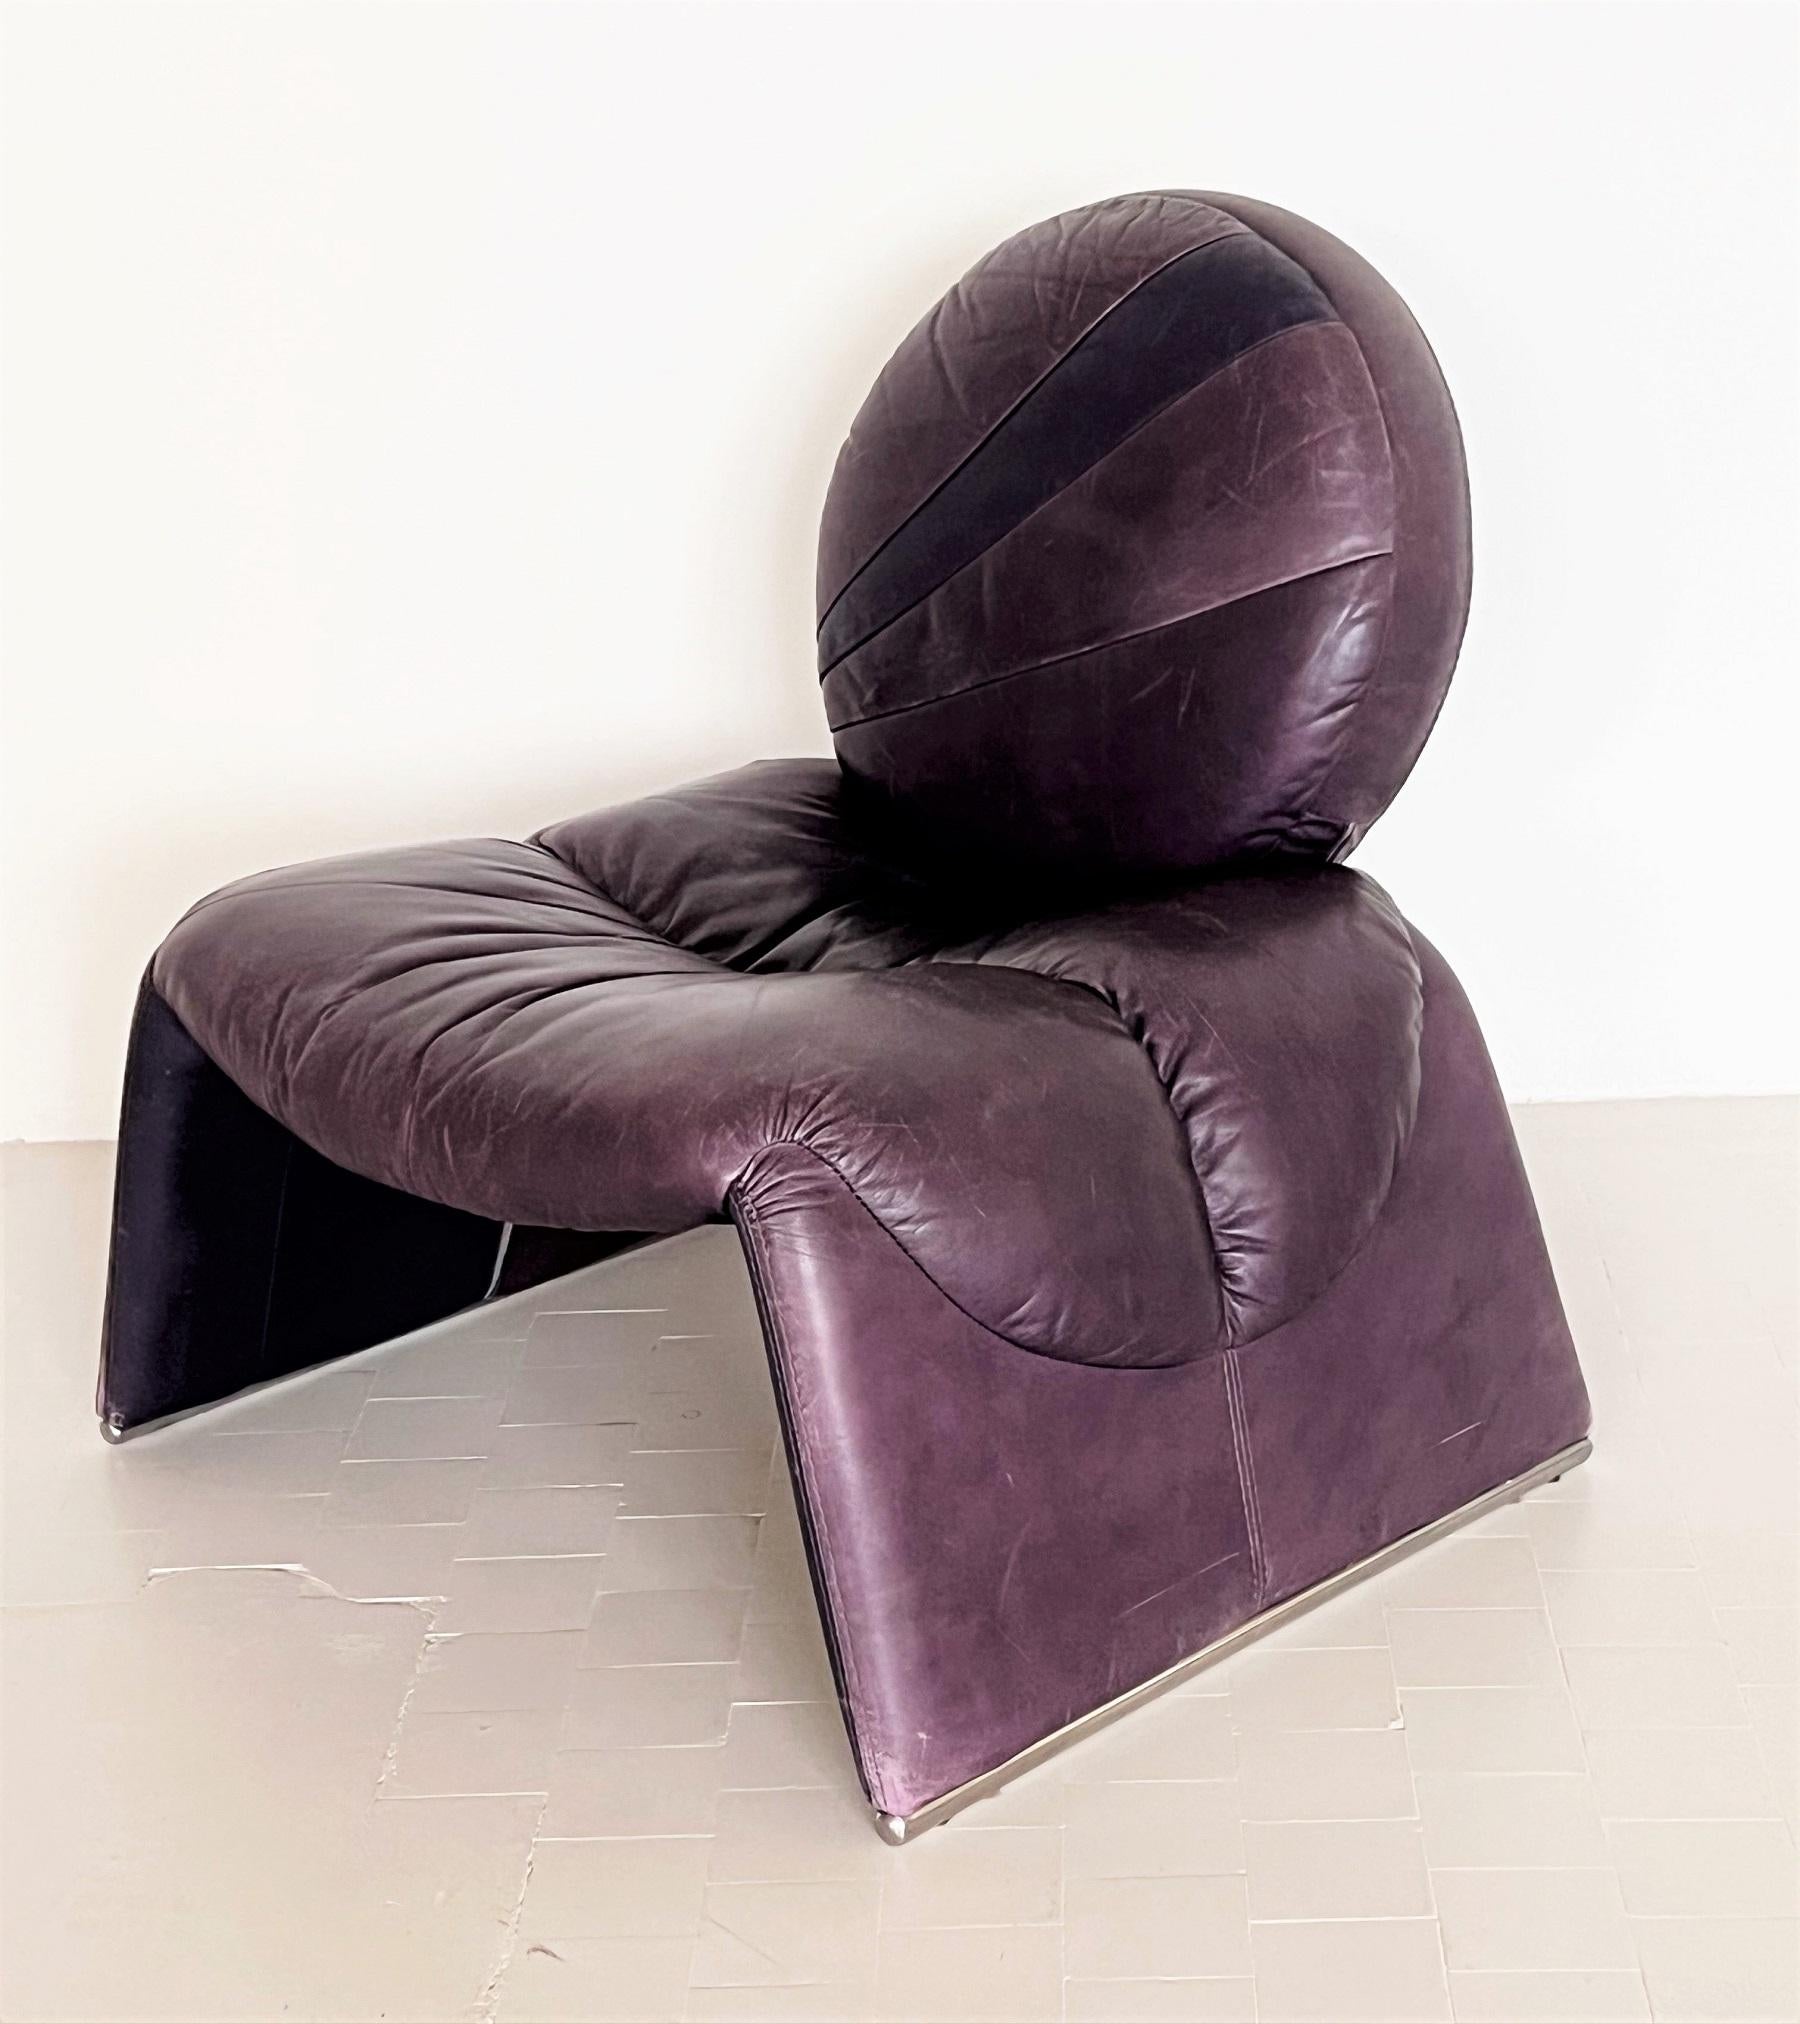 Une belle chaise de salon très confortable avec des sièges en cuir lisse violet à effet de selle.
La chaise est recouverte de son cuir d'origine. 
Conçu dans les années 1970 par Vittorio Introini et fabriqué dans les années 1980 par Saporiti